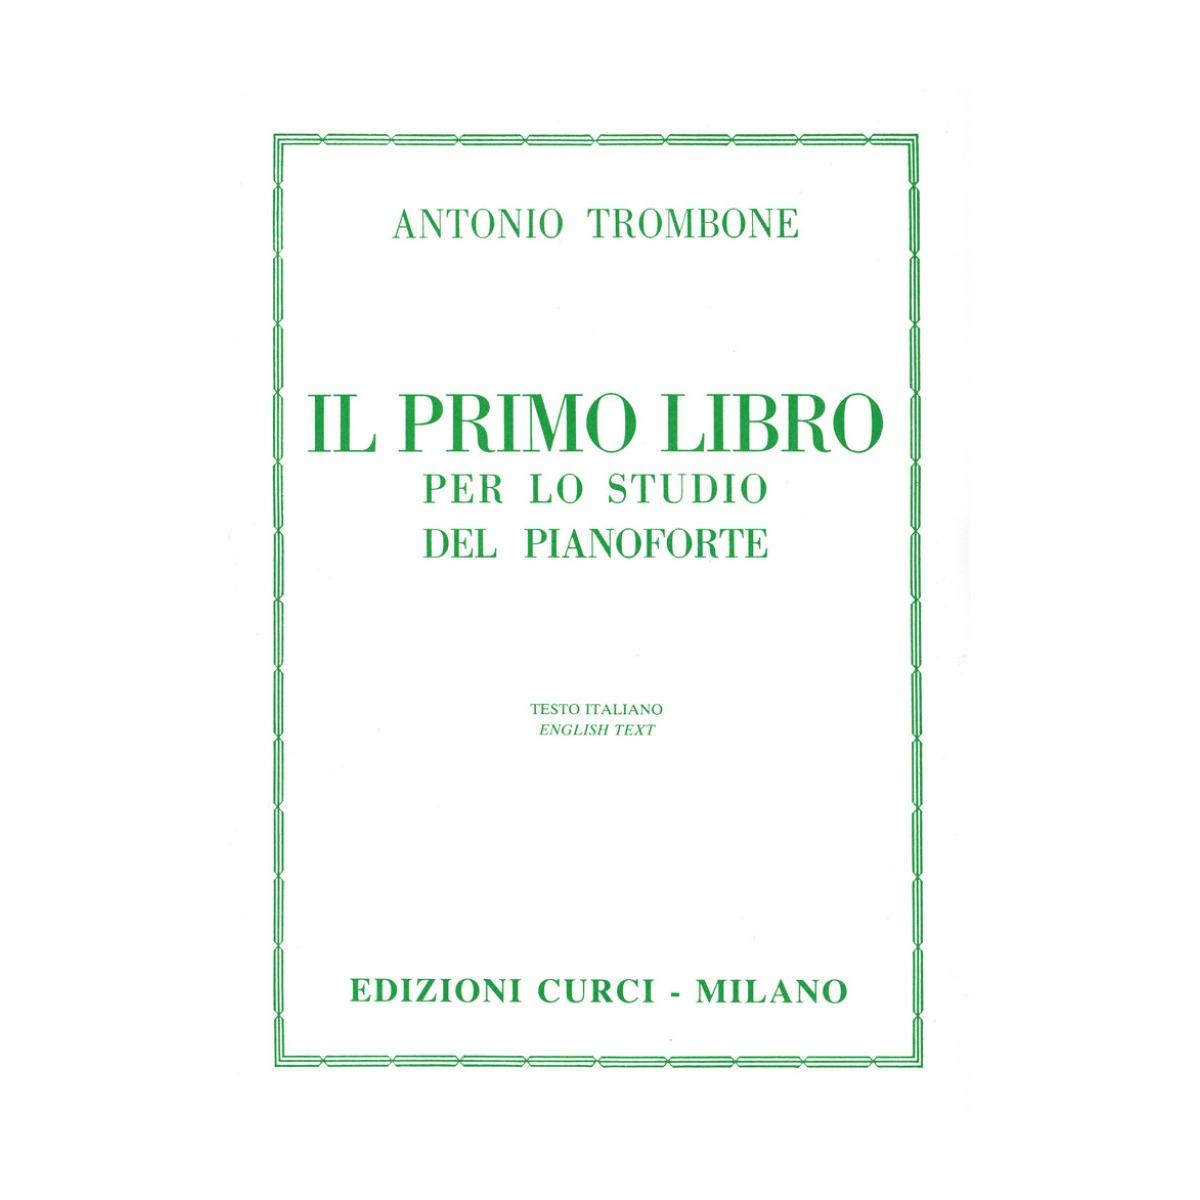 Il primo libro per lo studio del pianoforte a.trombone  18